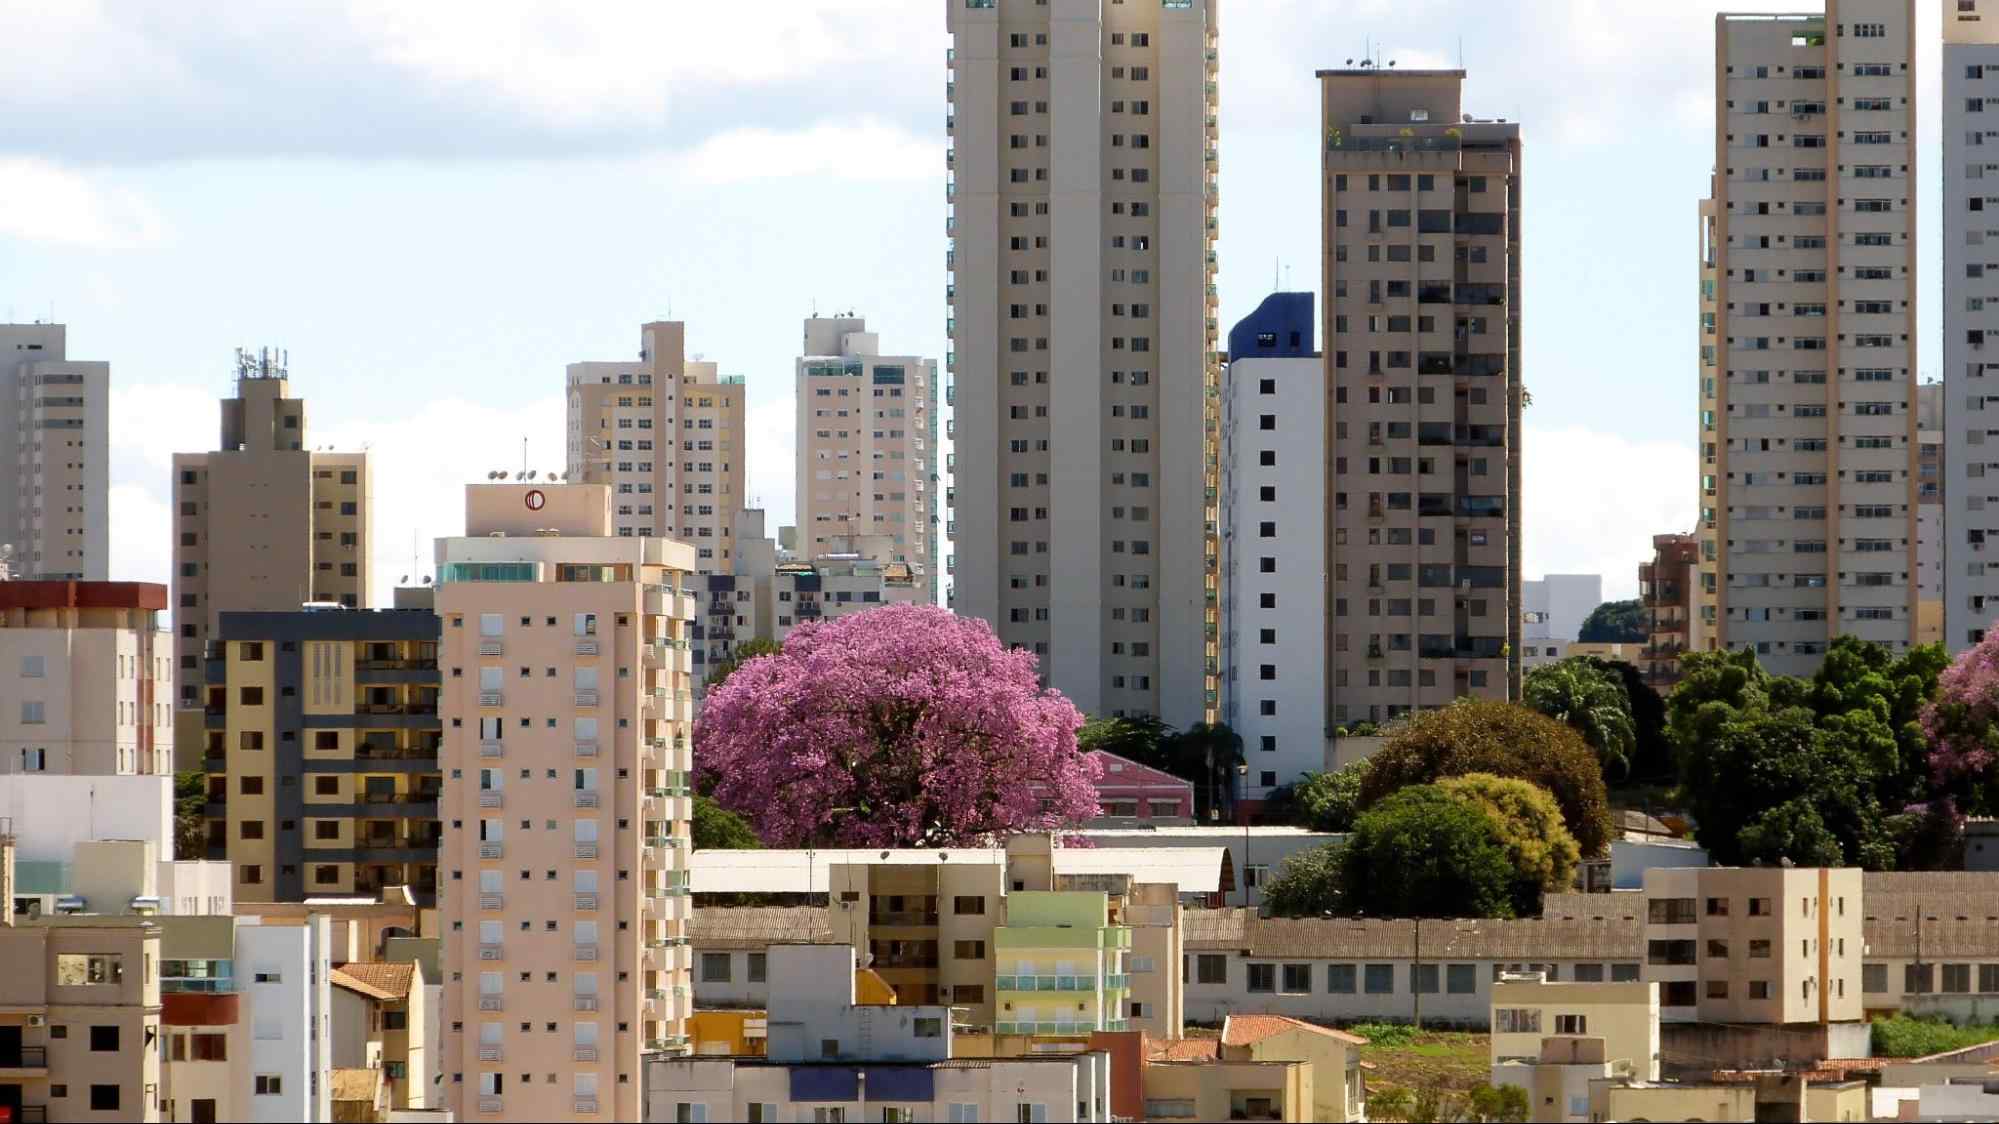 Uberlândia, Minas Gerais